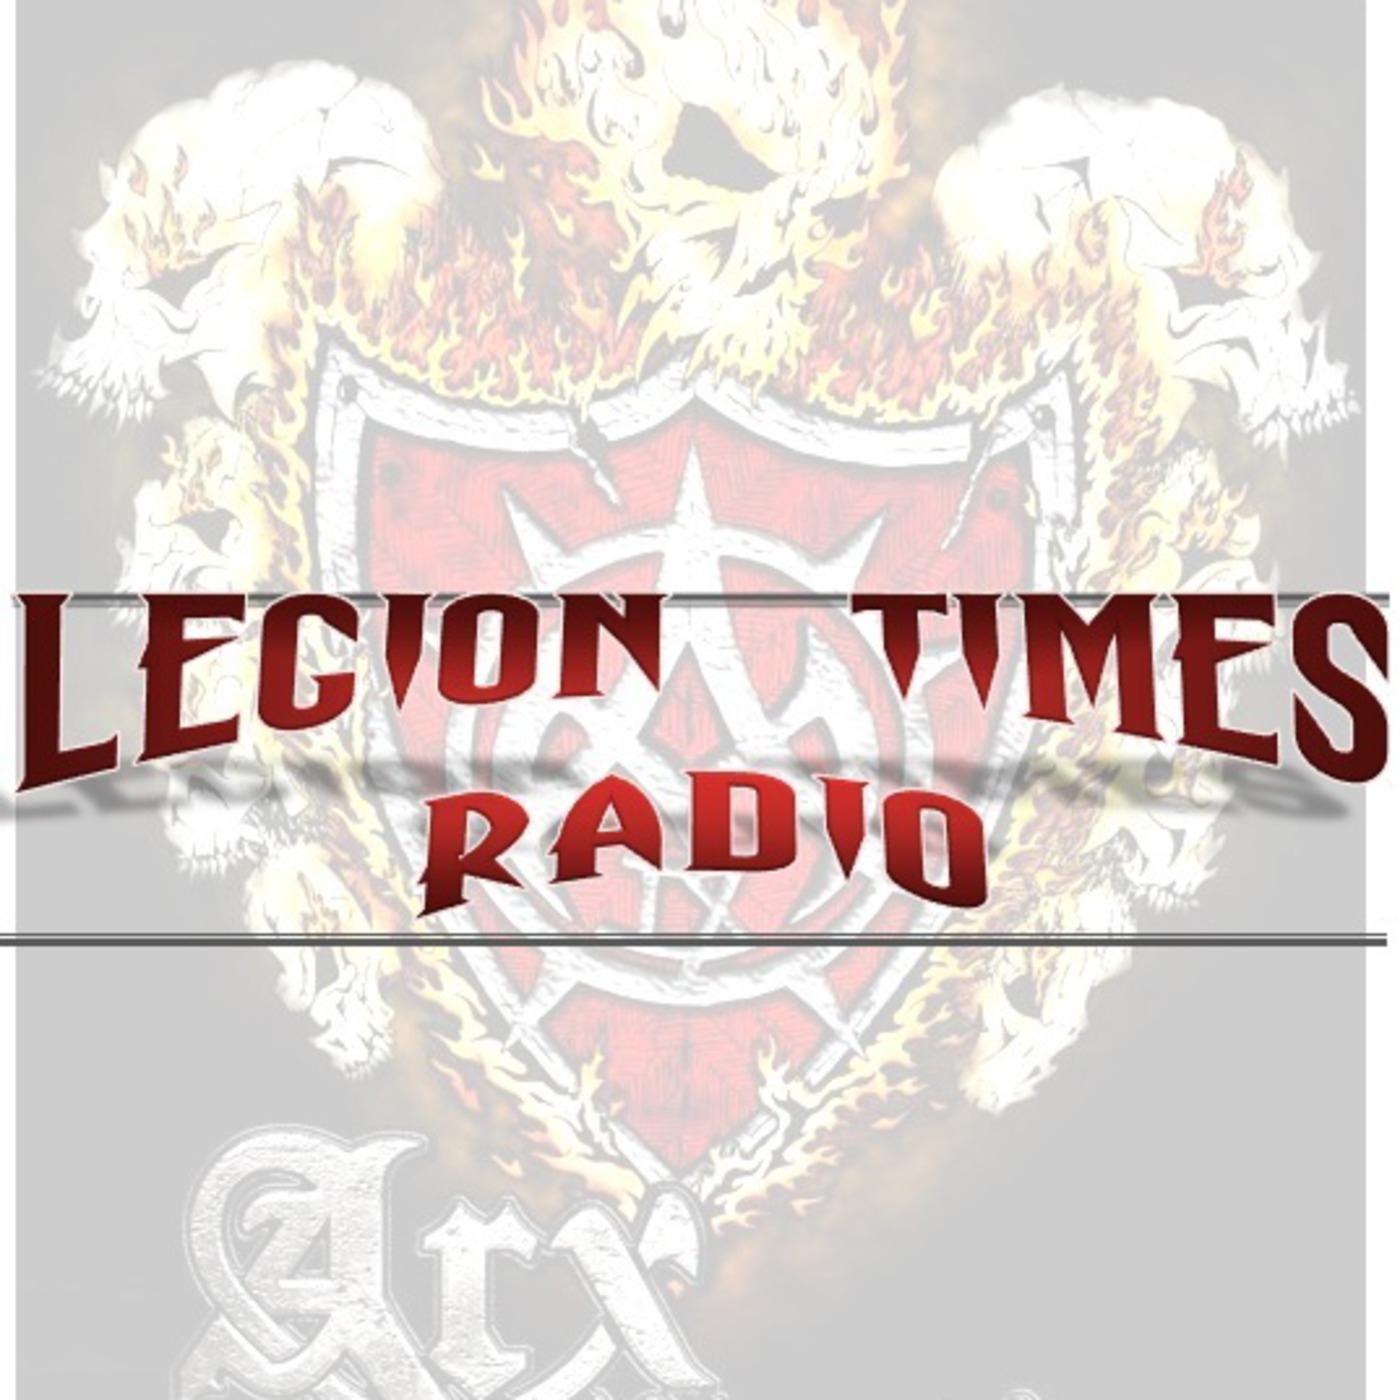 Legion Times Radio